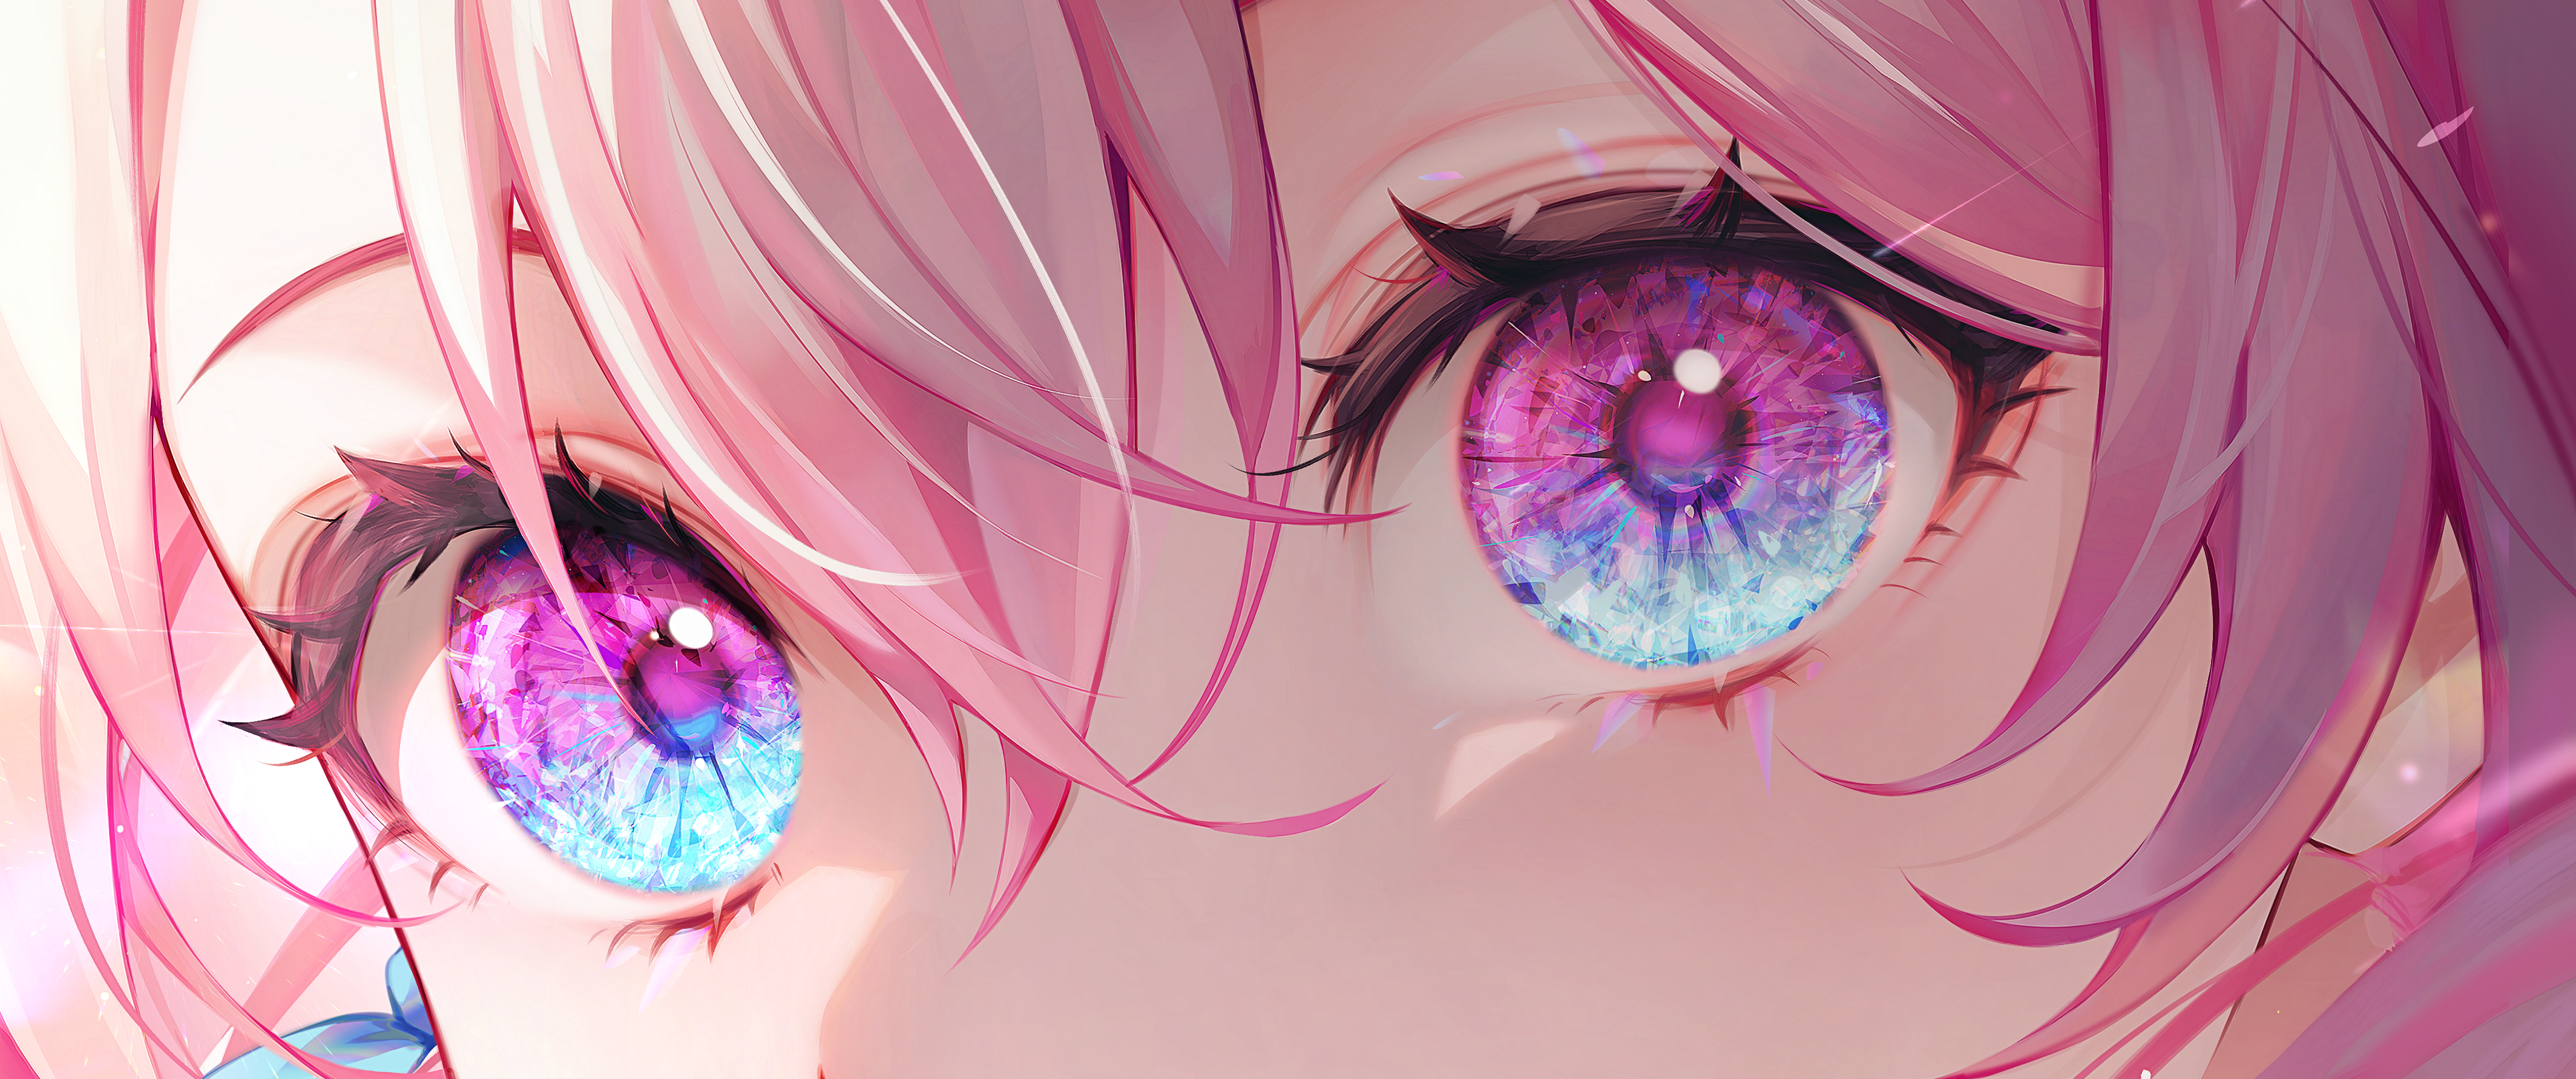 Anime Pink Hair Artwork Digital Art Honkai Star Rail Eyes Multi Colored Eyes Bangs Looking At Viewer 4256x1782